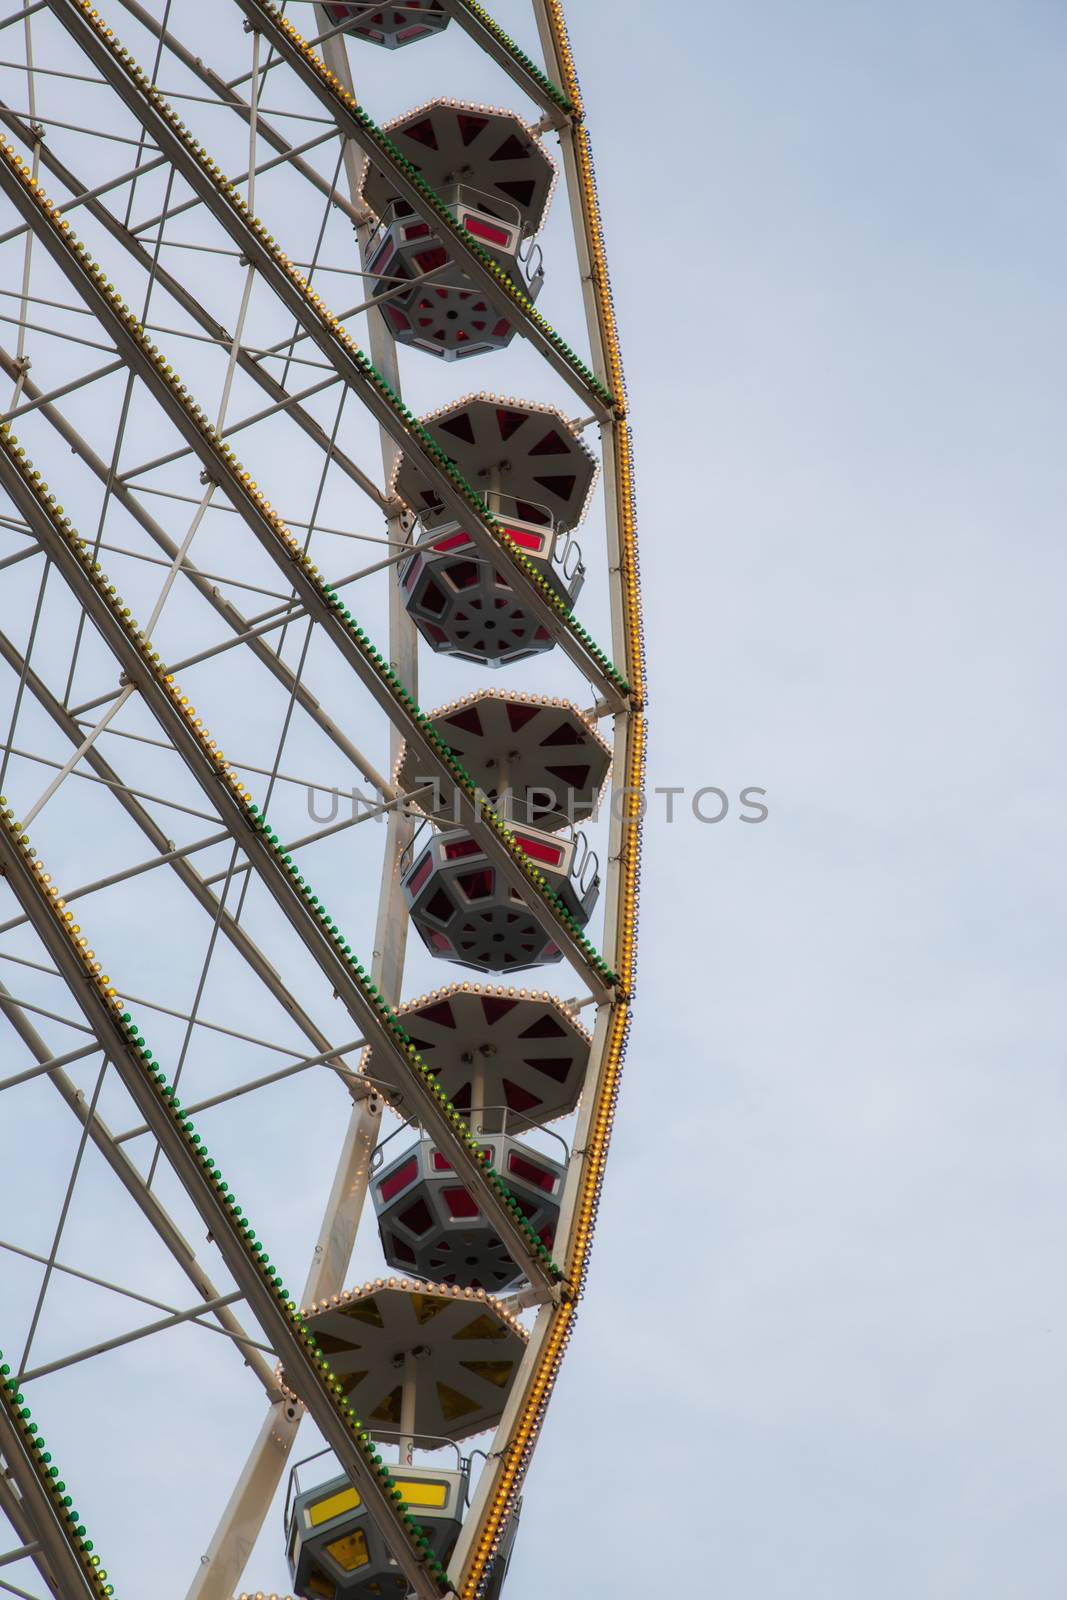 Ferris wheel in front of a blue sky